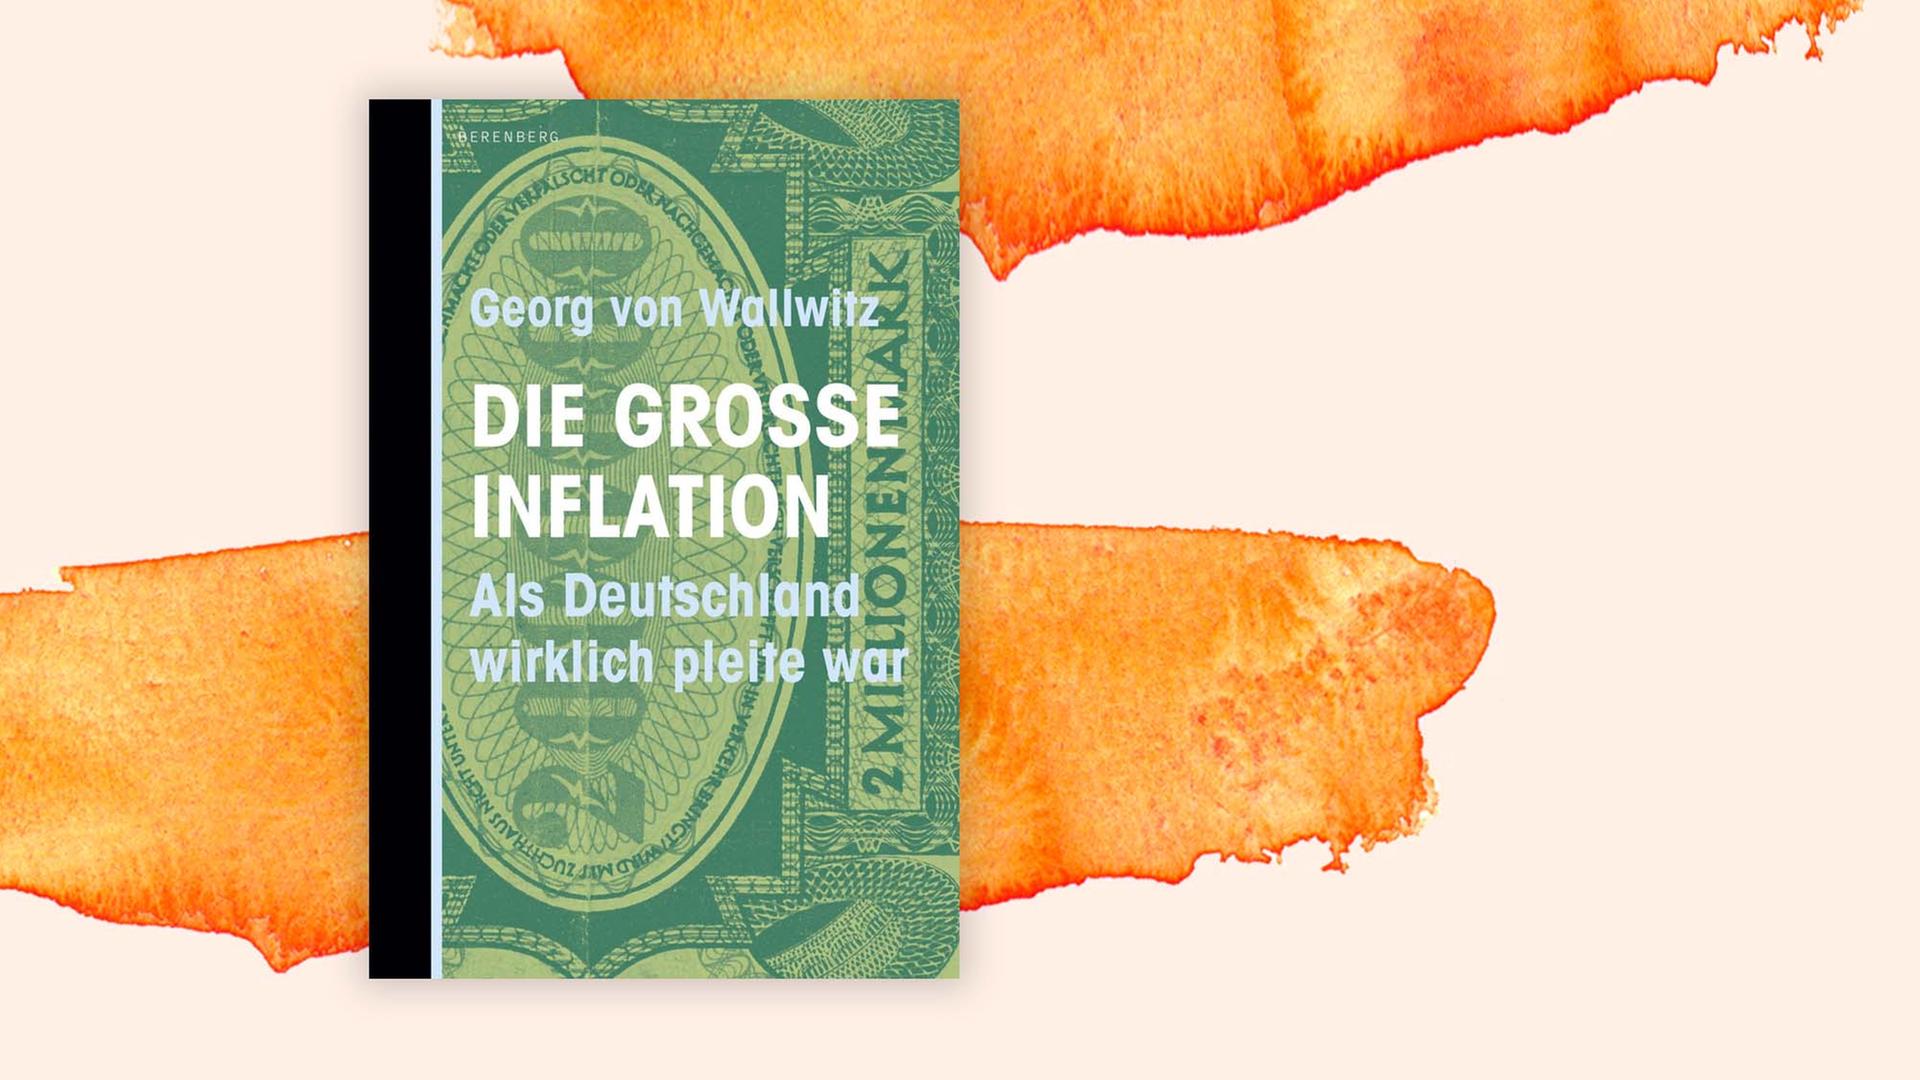 Buchcover: "Die große Inflation. Als Deutschland wirklich pleite war" von Georg von Wallwitz